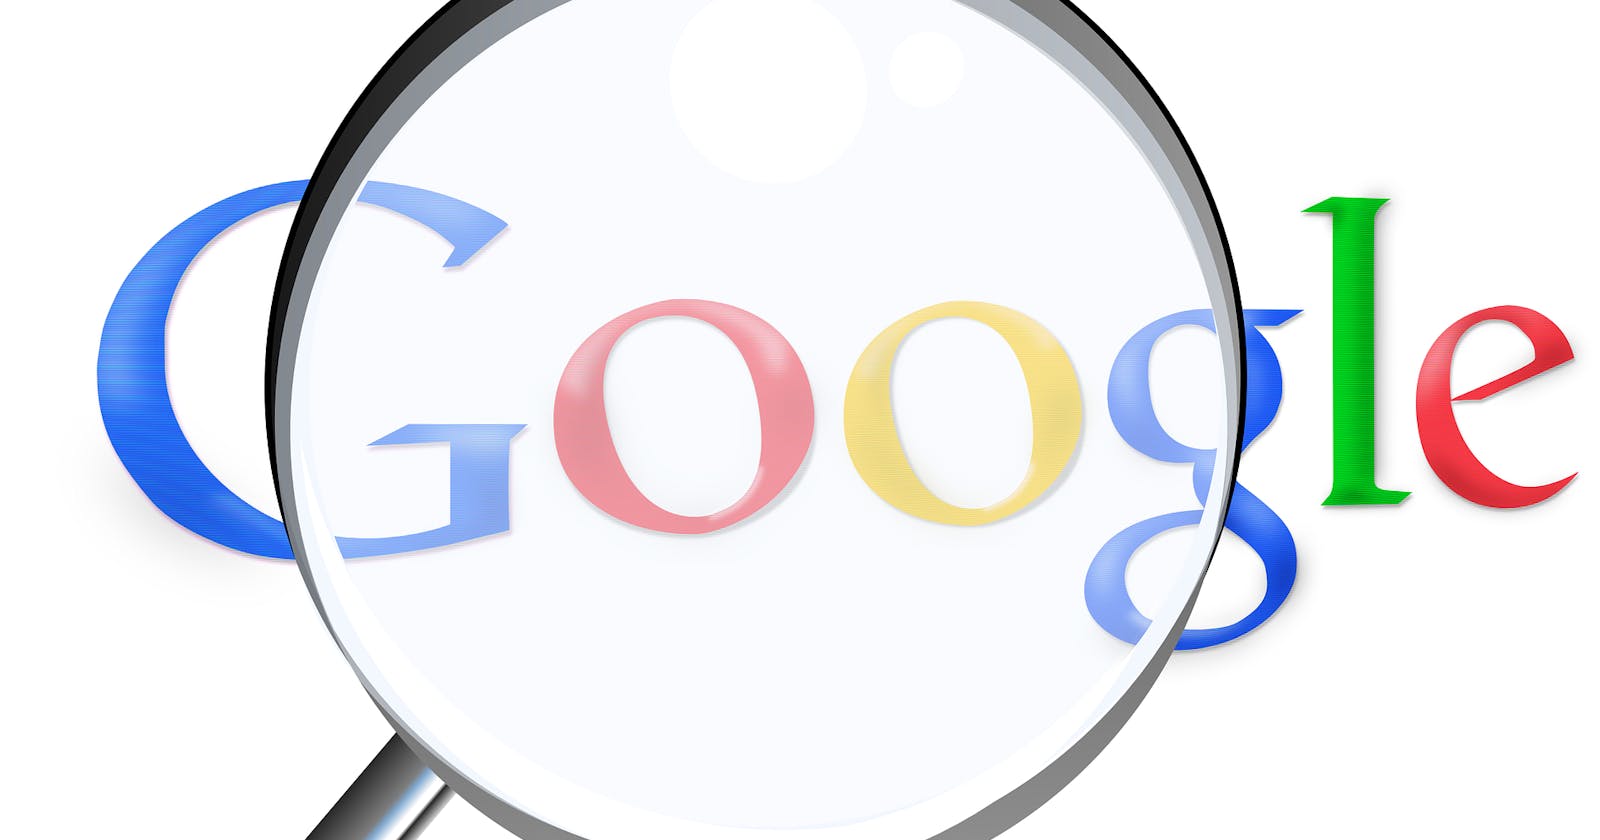 Comment bien référencer son site internet sur Google en tant que micro-entreprise ?